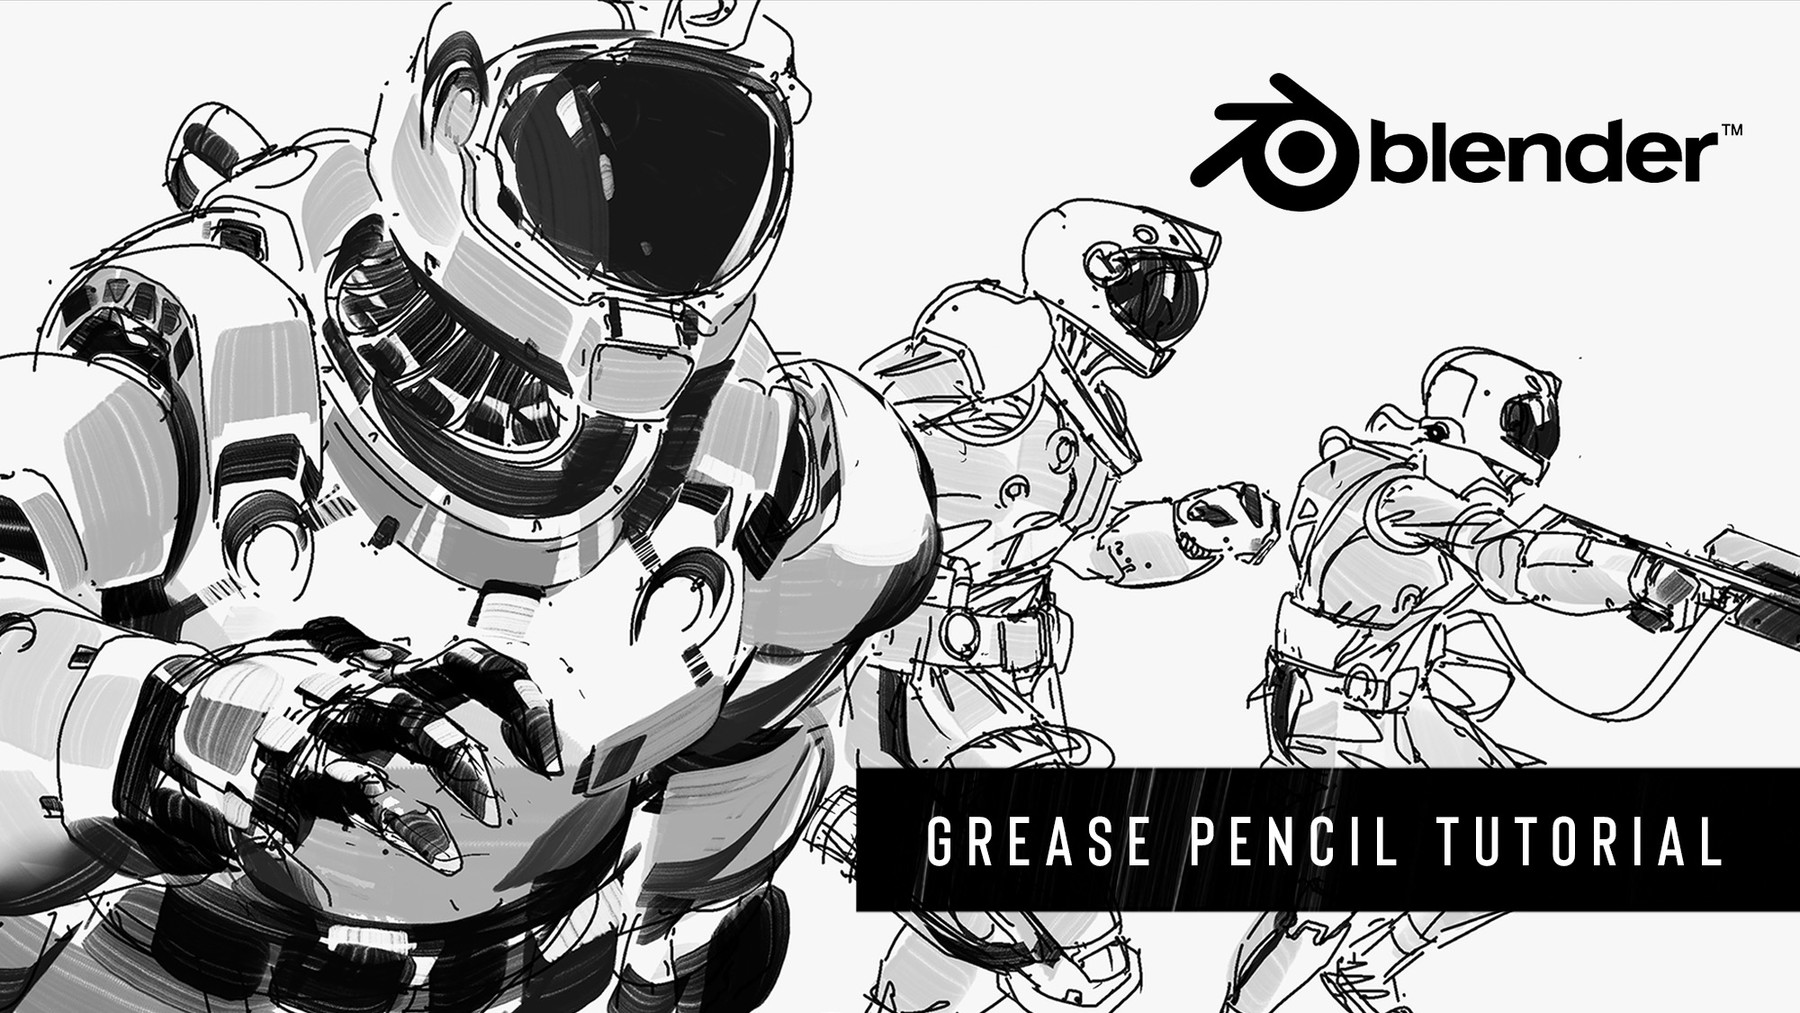 ArtStation - BLENDER: Grease Pencil Tutorial